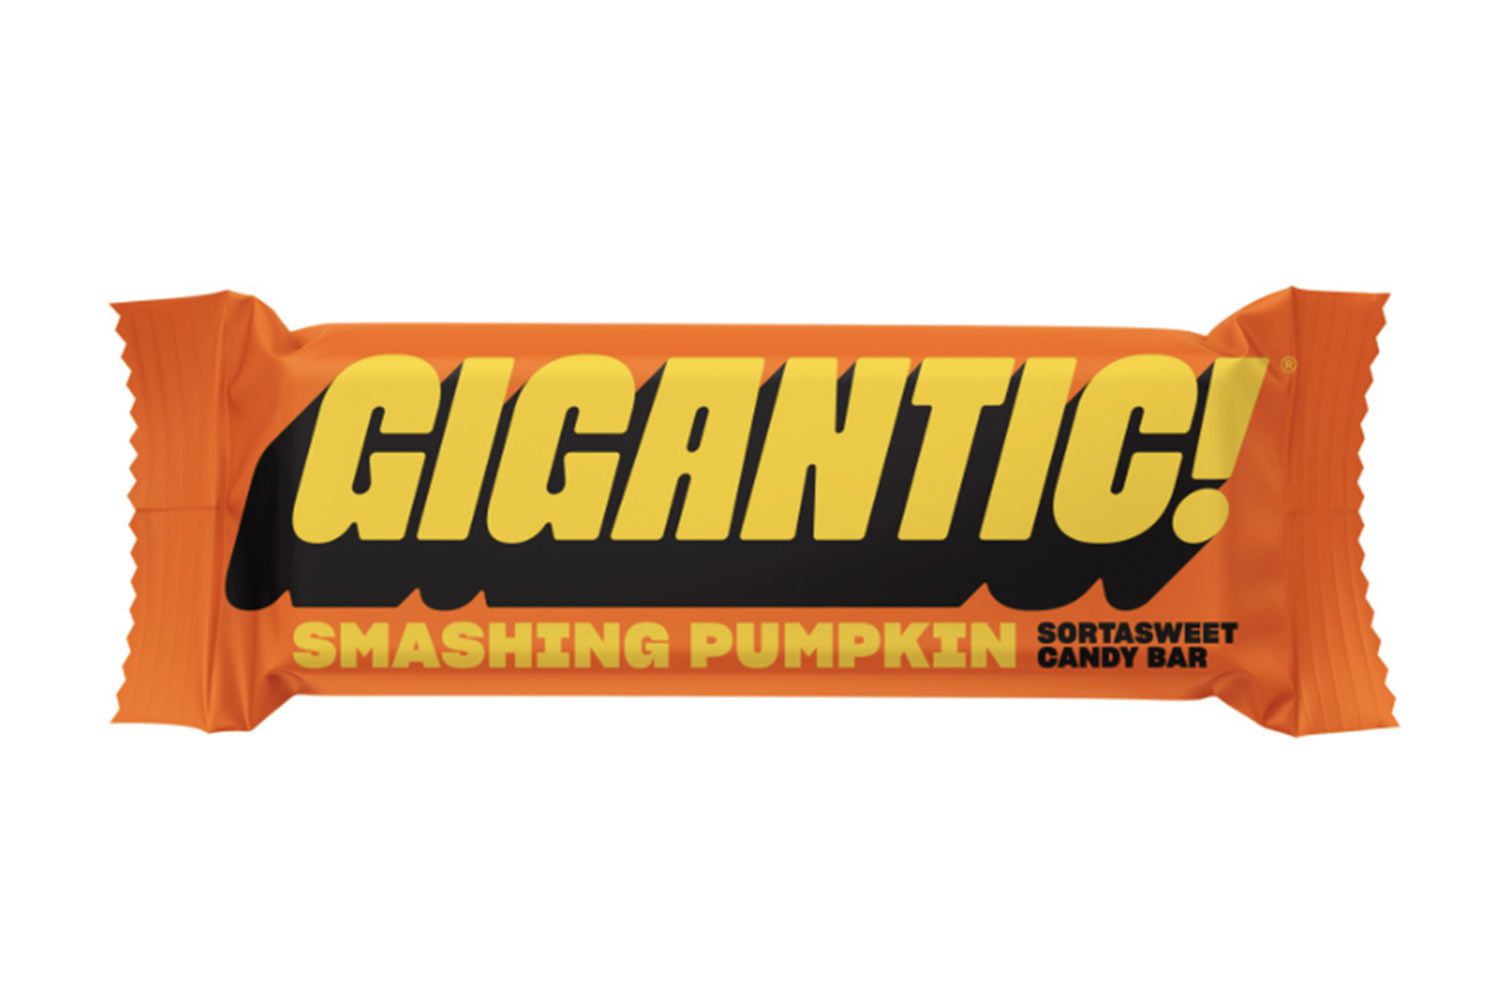 Gigantic! Smashing Pumpkin Candy Bar